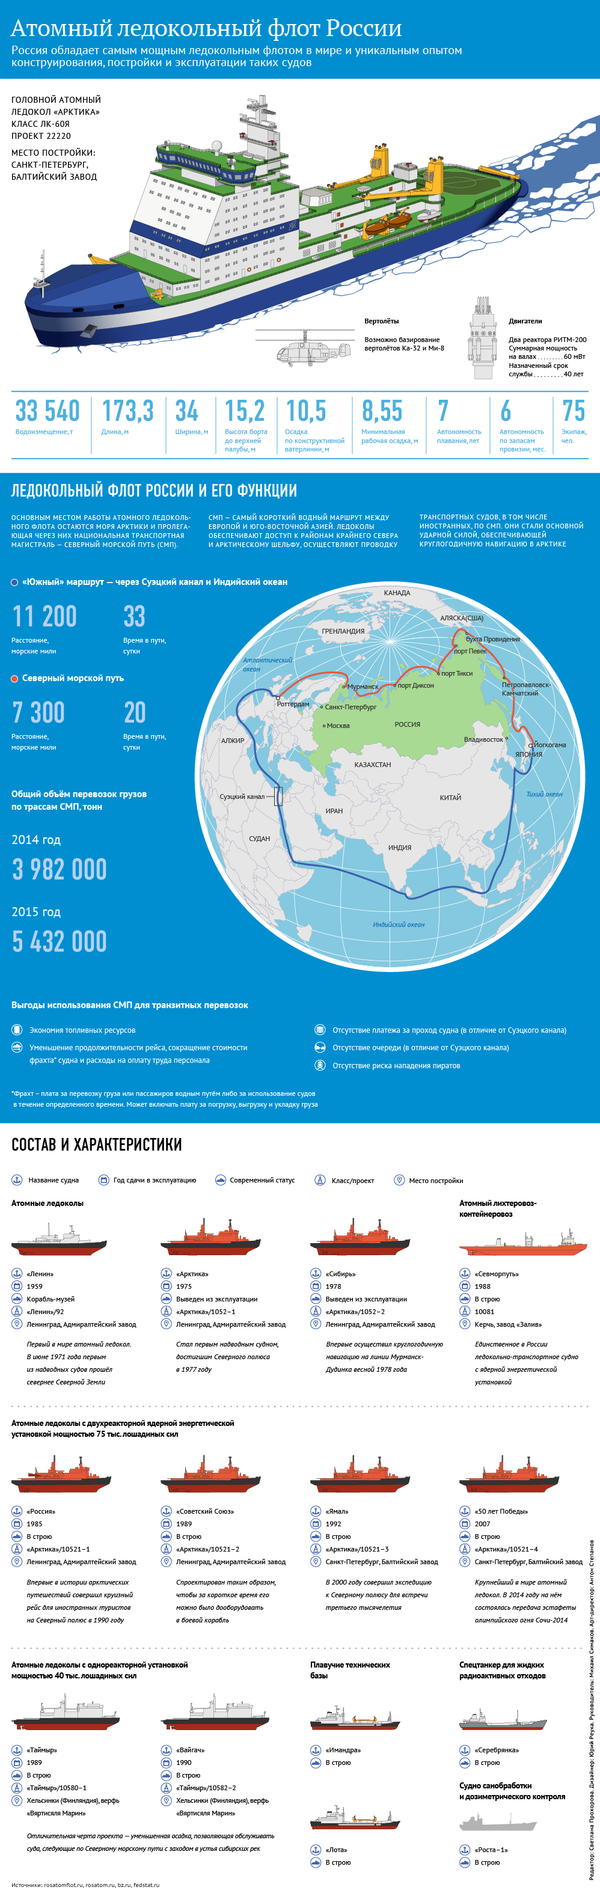 Характеристики и задачи ледокола Арктика - Sputnik Латвия